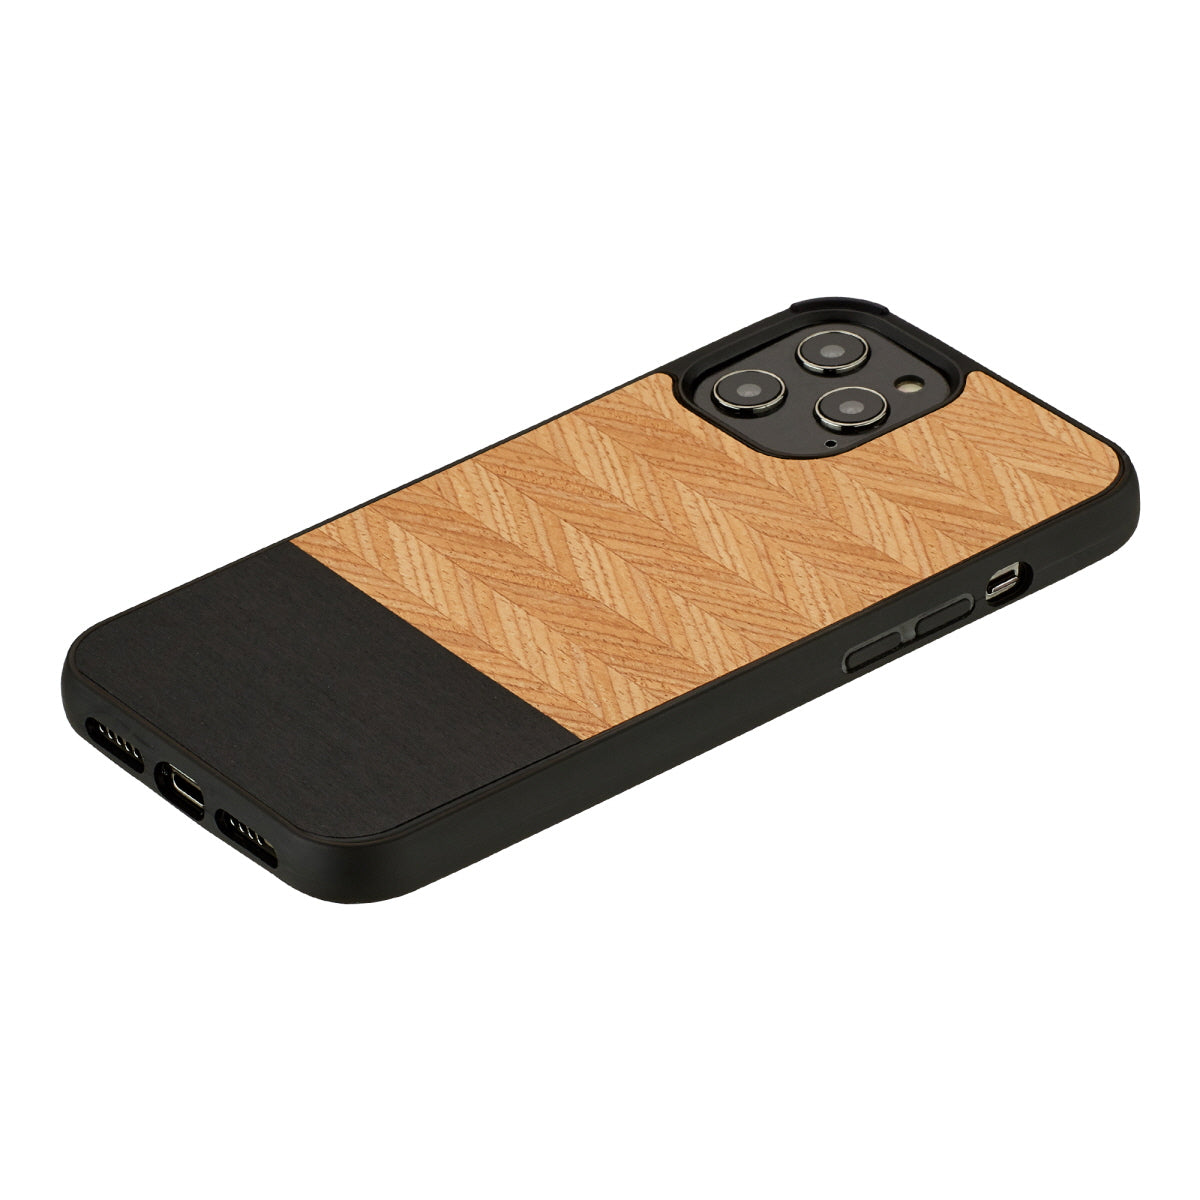 iPhone 12 Pro Max vāciņš no koka un polikarbonāta, Man&Wood